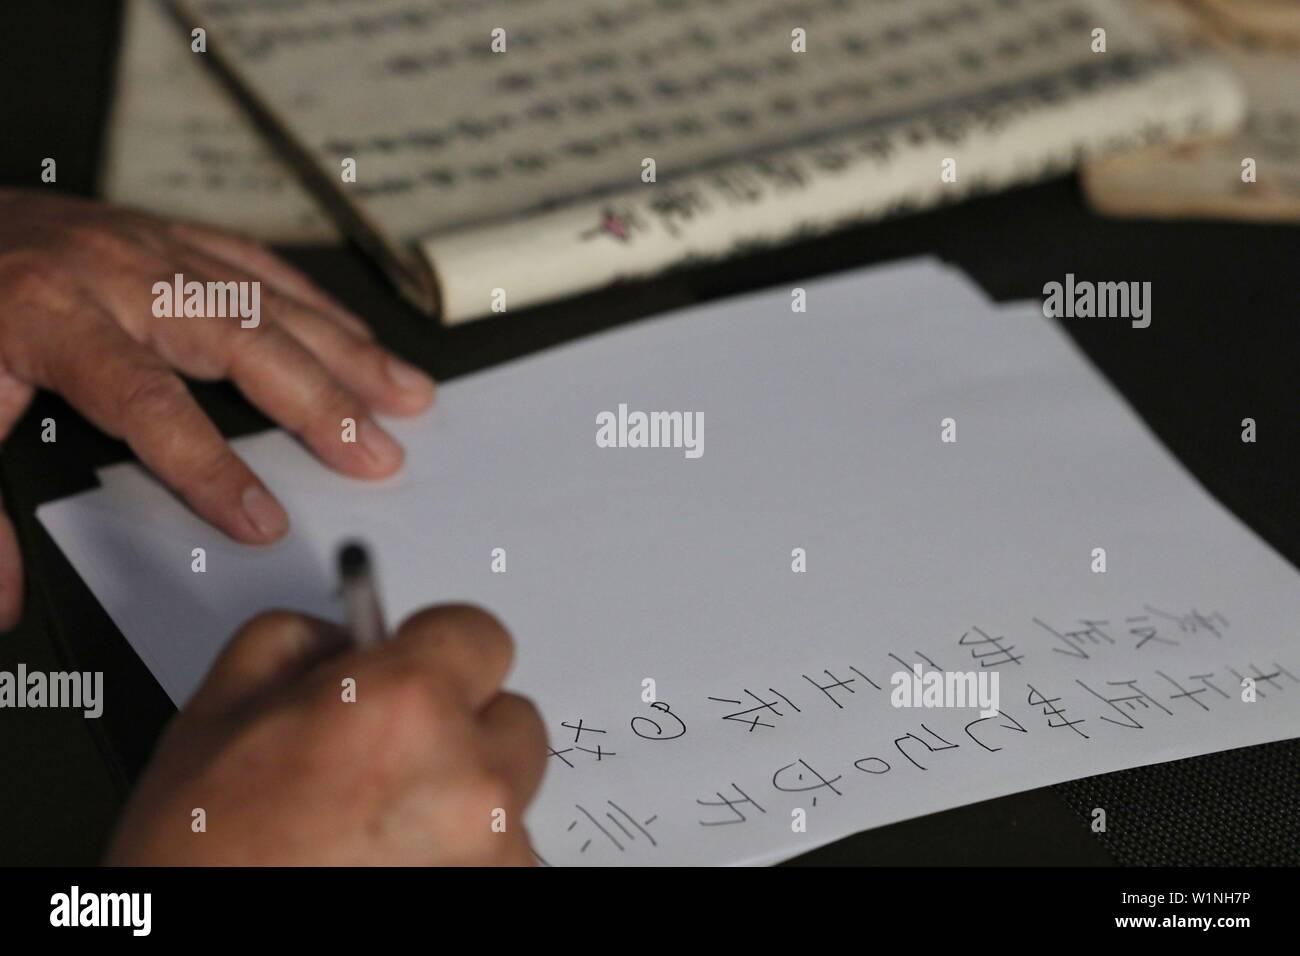 (190703) -- SANDU, le 3 juillet 2019 (Xinhua) -- chercheur culturel rend Shizhao Wei copies manuscrites d'un texte en script Shui dans le comté de Sandu, le sud-ouest de la Chine dans la province du Guizhou, le 3 juillet 2019. Wei a commencé à apprendre Shui script dans son enfance. Jusqu'à présent, ses traductions en chinois moderne de textes dans Shui script ont s'élevait à près de trois millions de caractères. Le Shui script est le système d'écriture pictographique unique utilisé par le peuple Shui dans le sud-ouest de la Chine de tenir des registres de leur culture. Comme le bronze et l'os d'oracle les inscriptions de la Chine ancienne, le Shui script se compose de logogrammes inve Banque D'Images